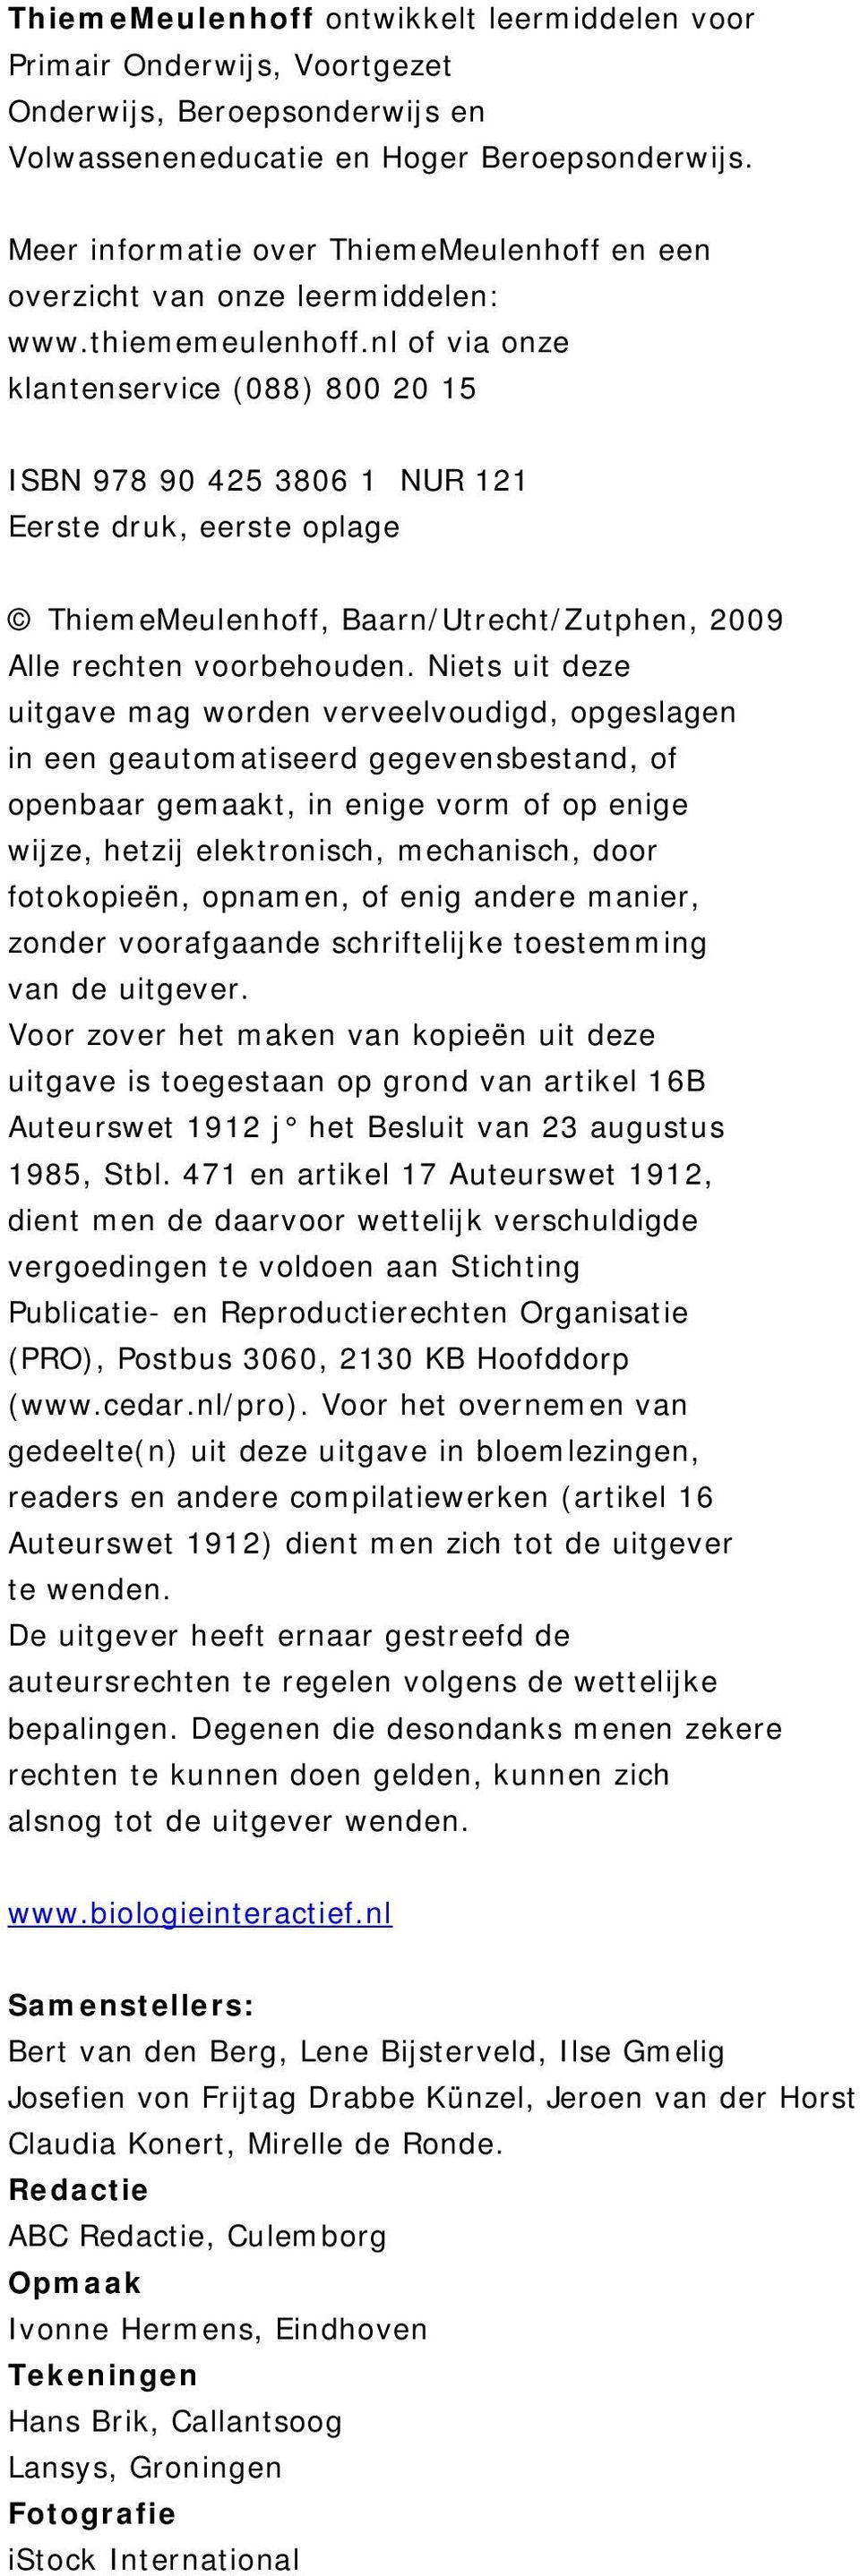 nl of via onze klantenservice (088) 800 20 15 ISBN 978 90 425 3806 1 NUR 121 Eerste druk, eerste oplage ThiemeMeulenhoff, Baarn/Utrecht/Zutphen, 2009 Alle rechten voorbehouden.